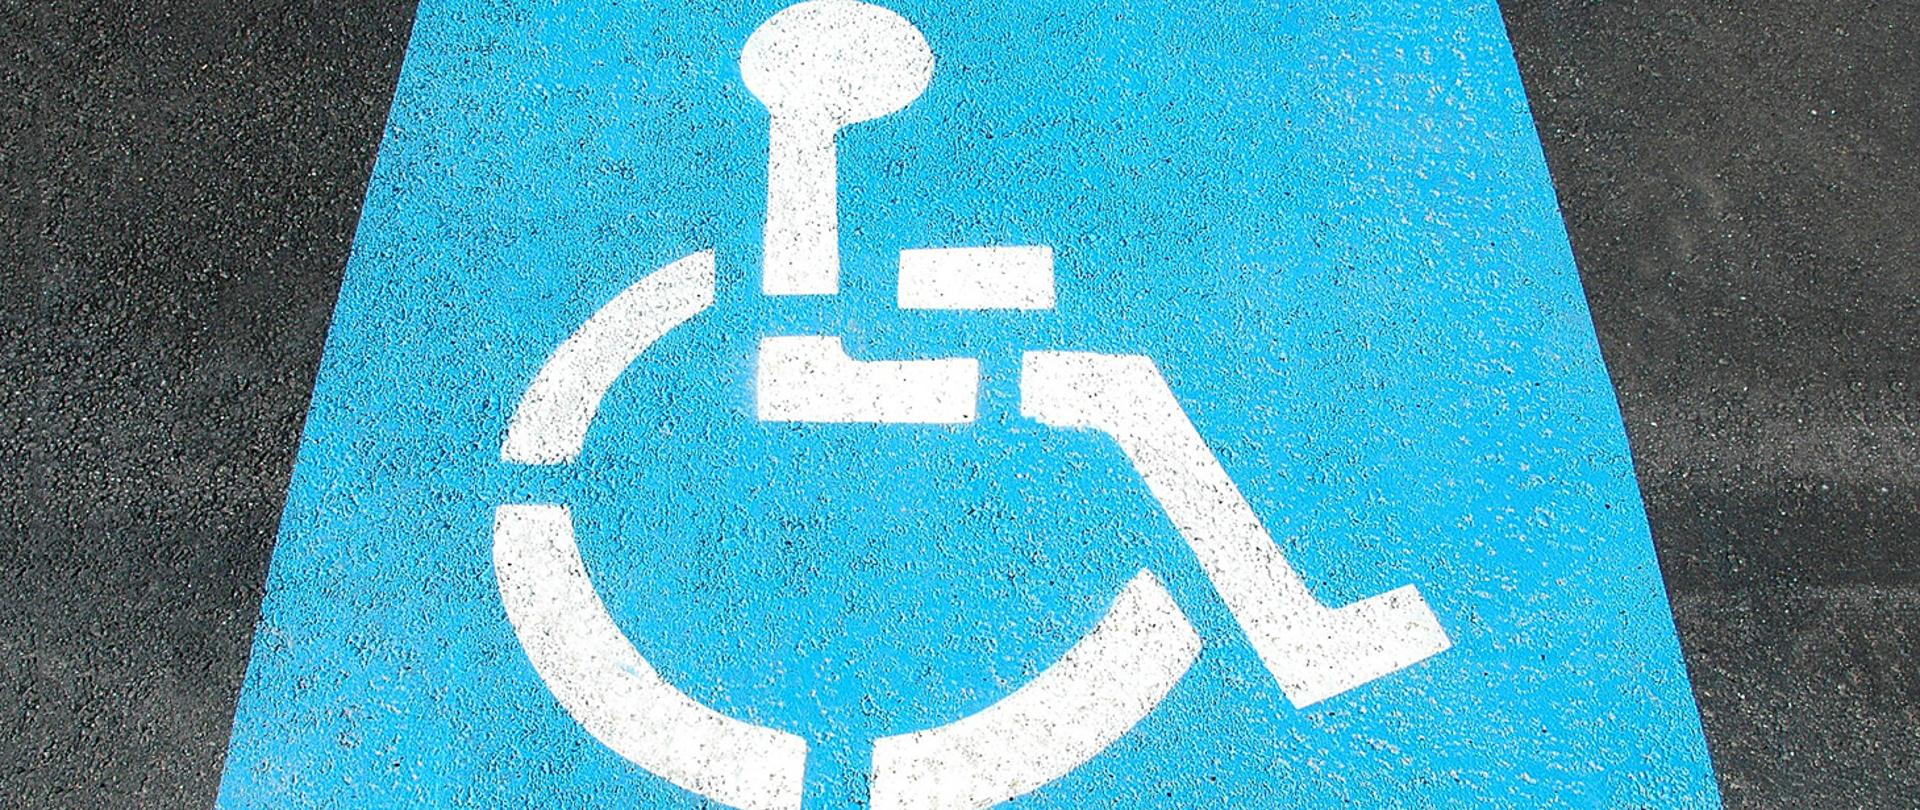 Powiatowy Zespół do Spraw Orzekania o Niepełnosprawności - wnioski o karty parkingowe